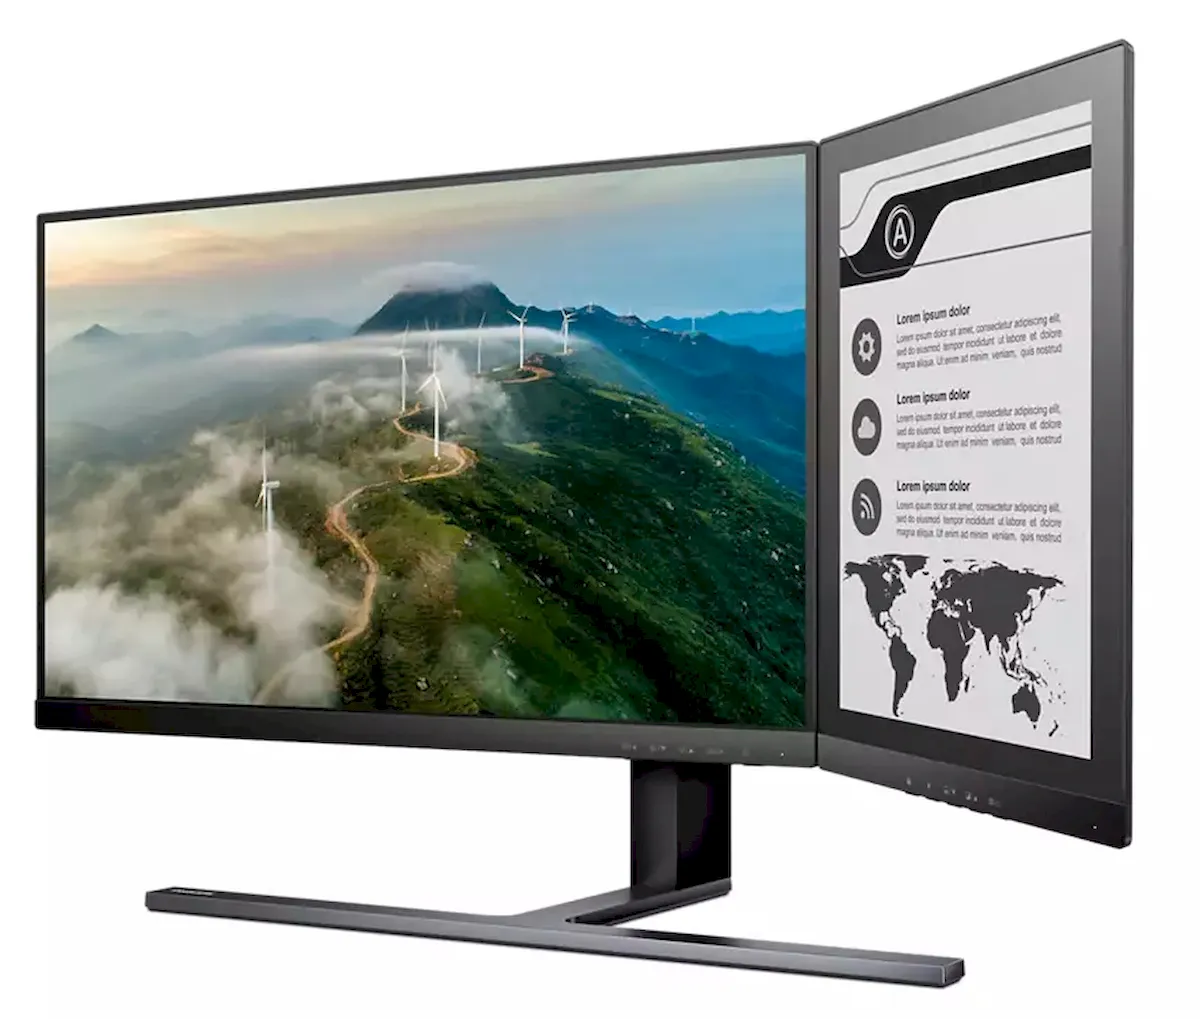 Monitor de tela dupla que combina telas LCD e E Ink